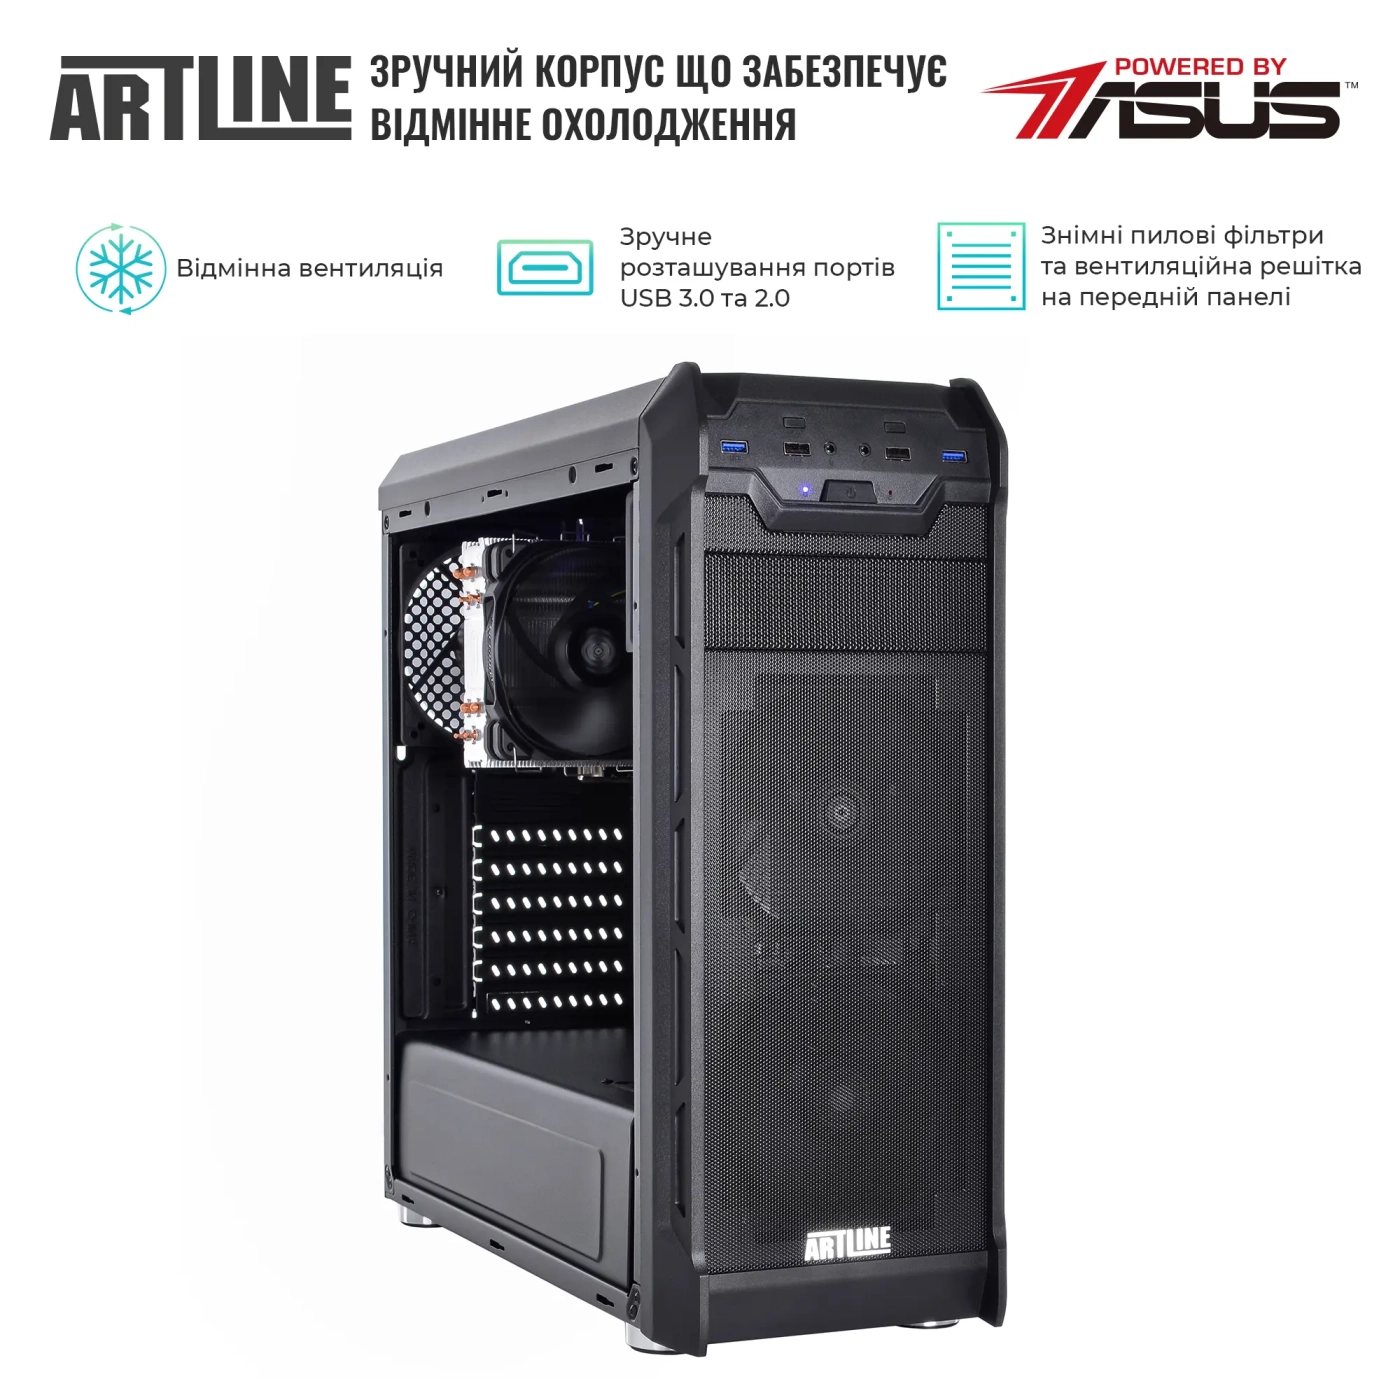 Купить Сервер ARTLINE Business T27 (T27v31) - фото 3